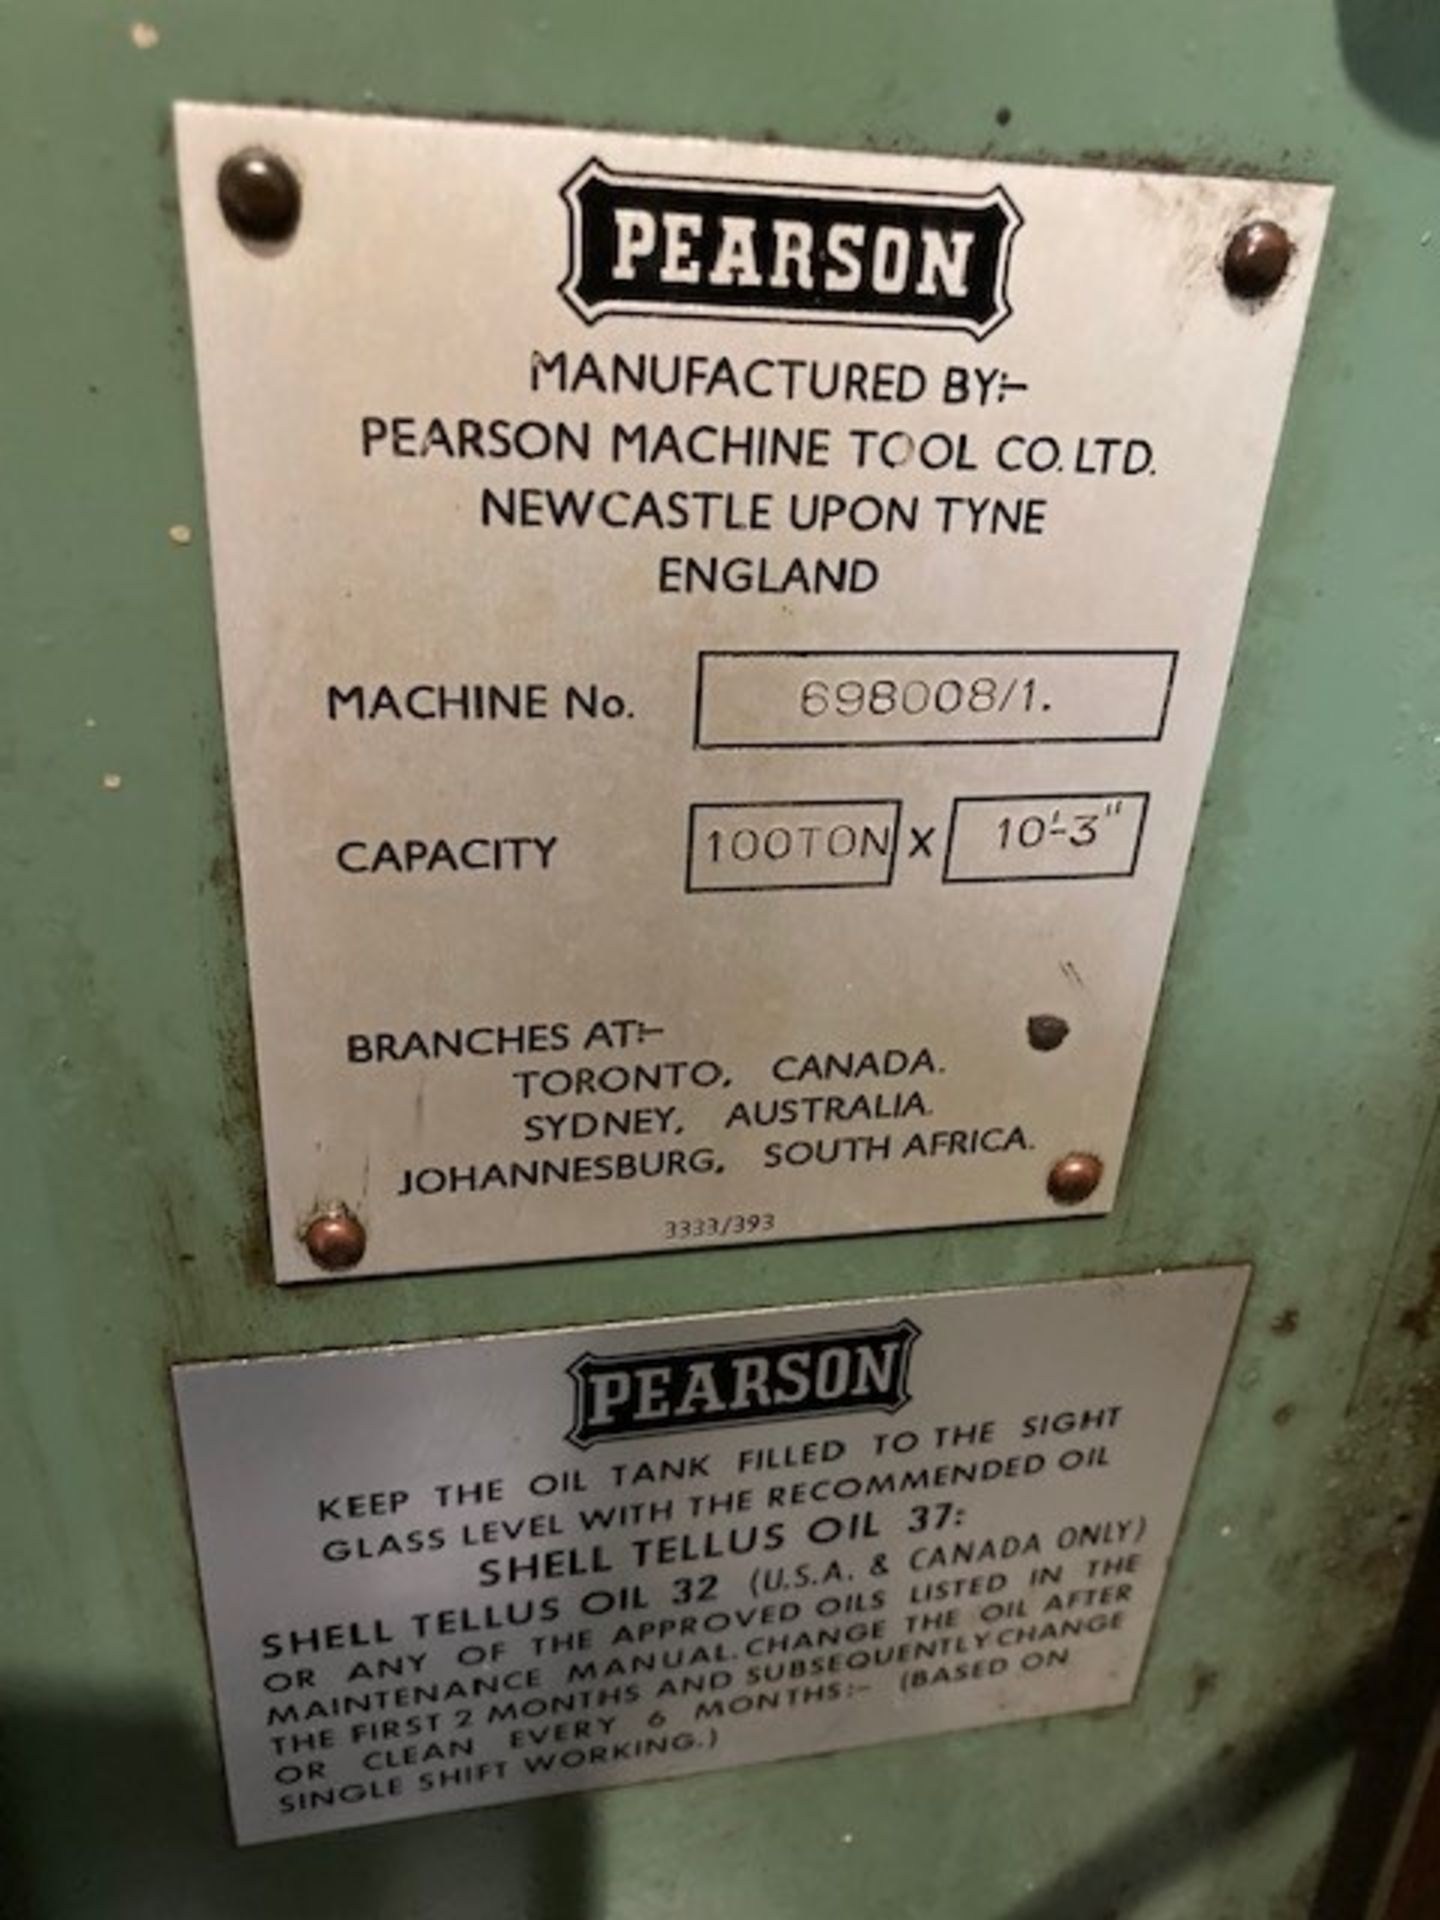 Pearson 10’3” x 100 Ton Hydraulic Pressbrake - Image 9 of 9